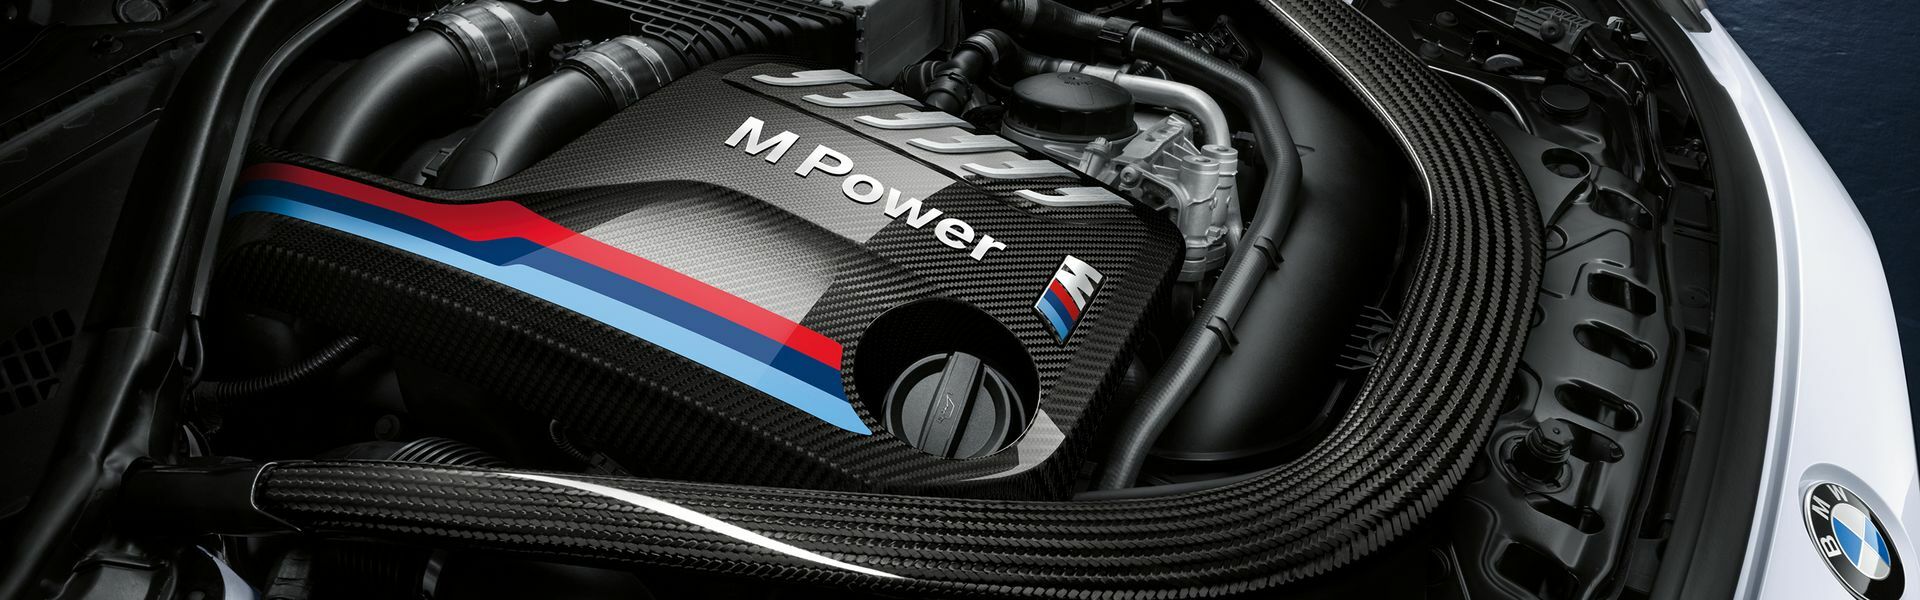 Zvýšení výkonu/ Softwarové úpravy/ Drobné performance díly pro automobil Porsche 911 Carrera /S/4/4S/GTS 991